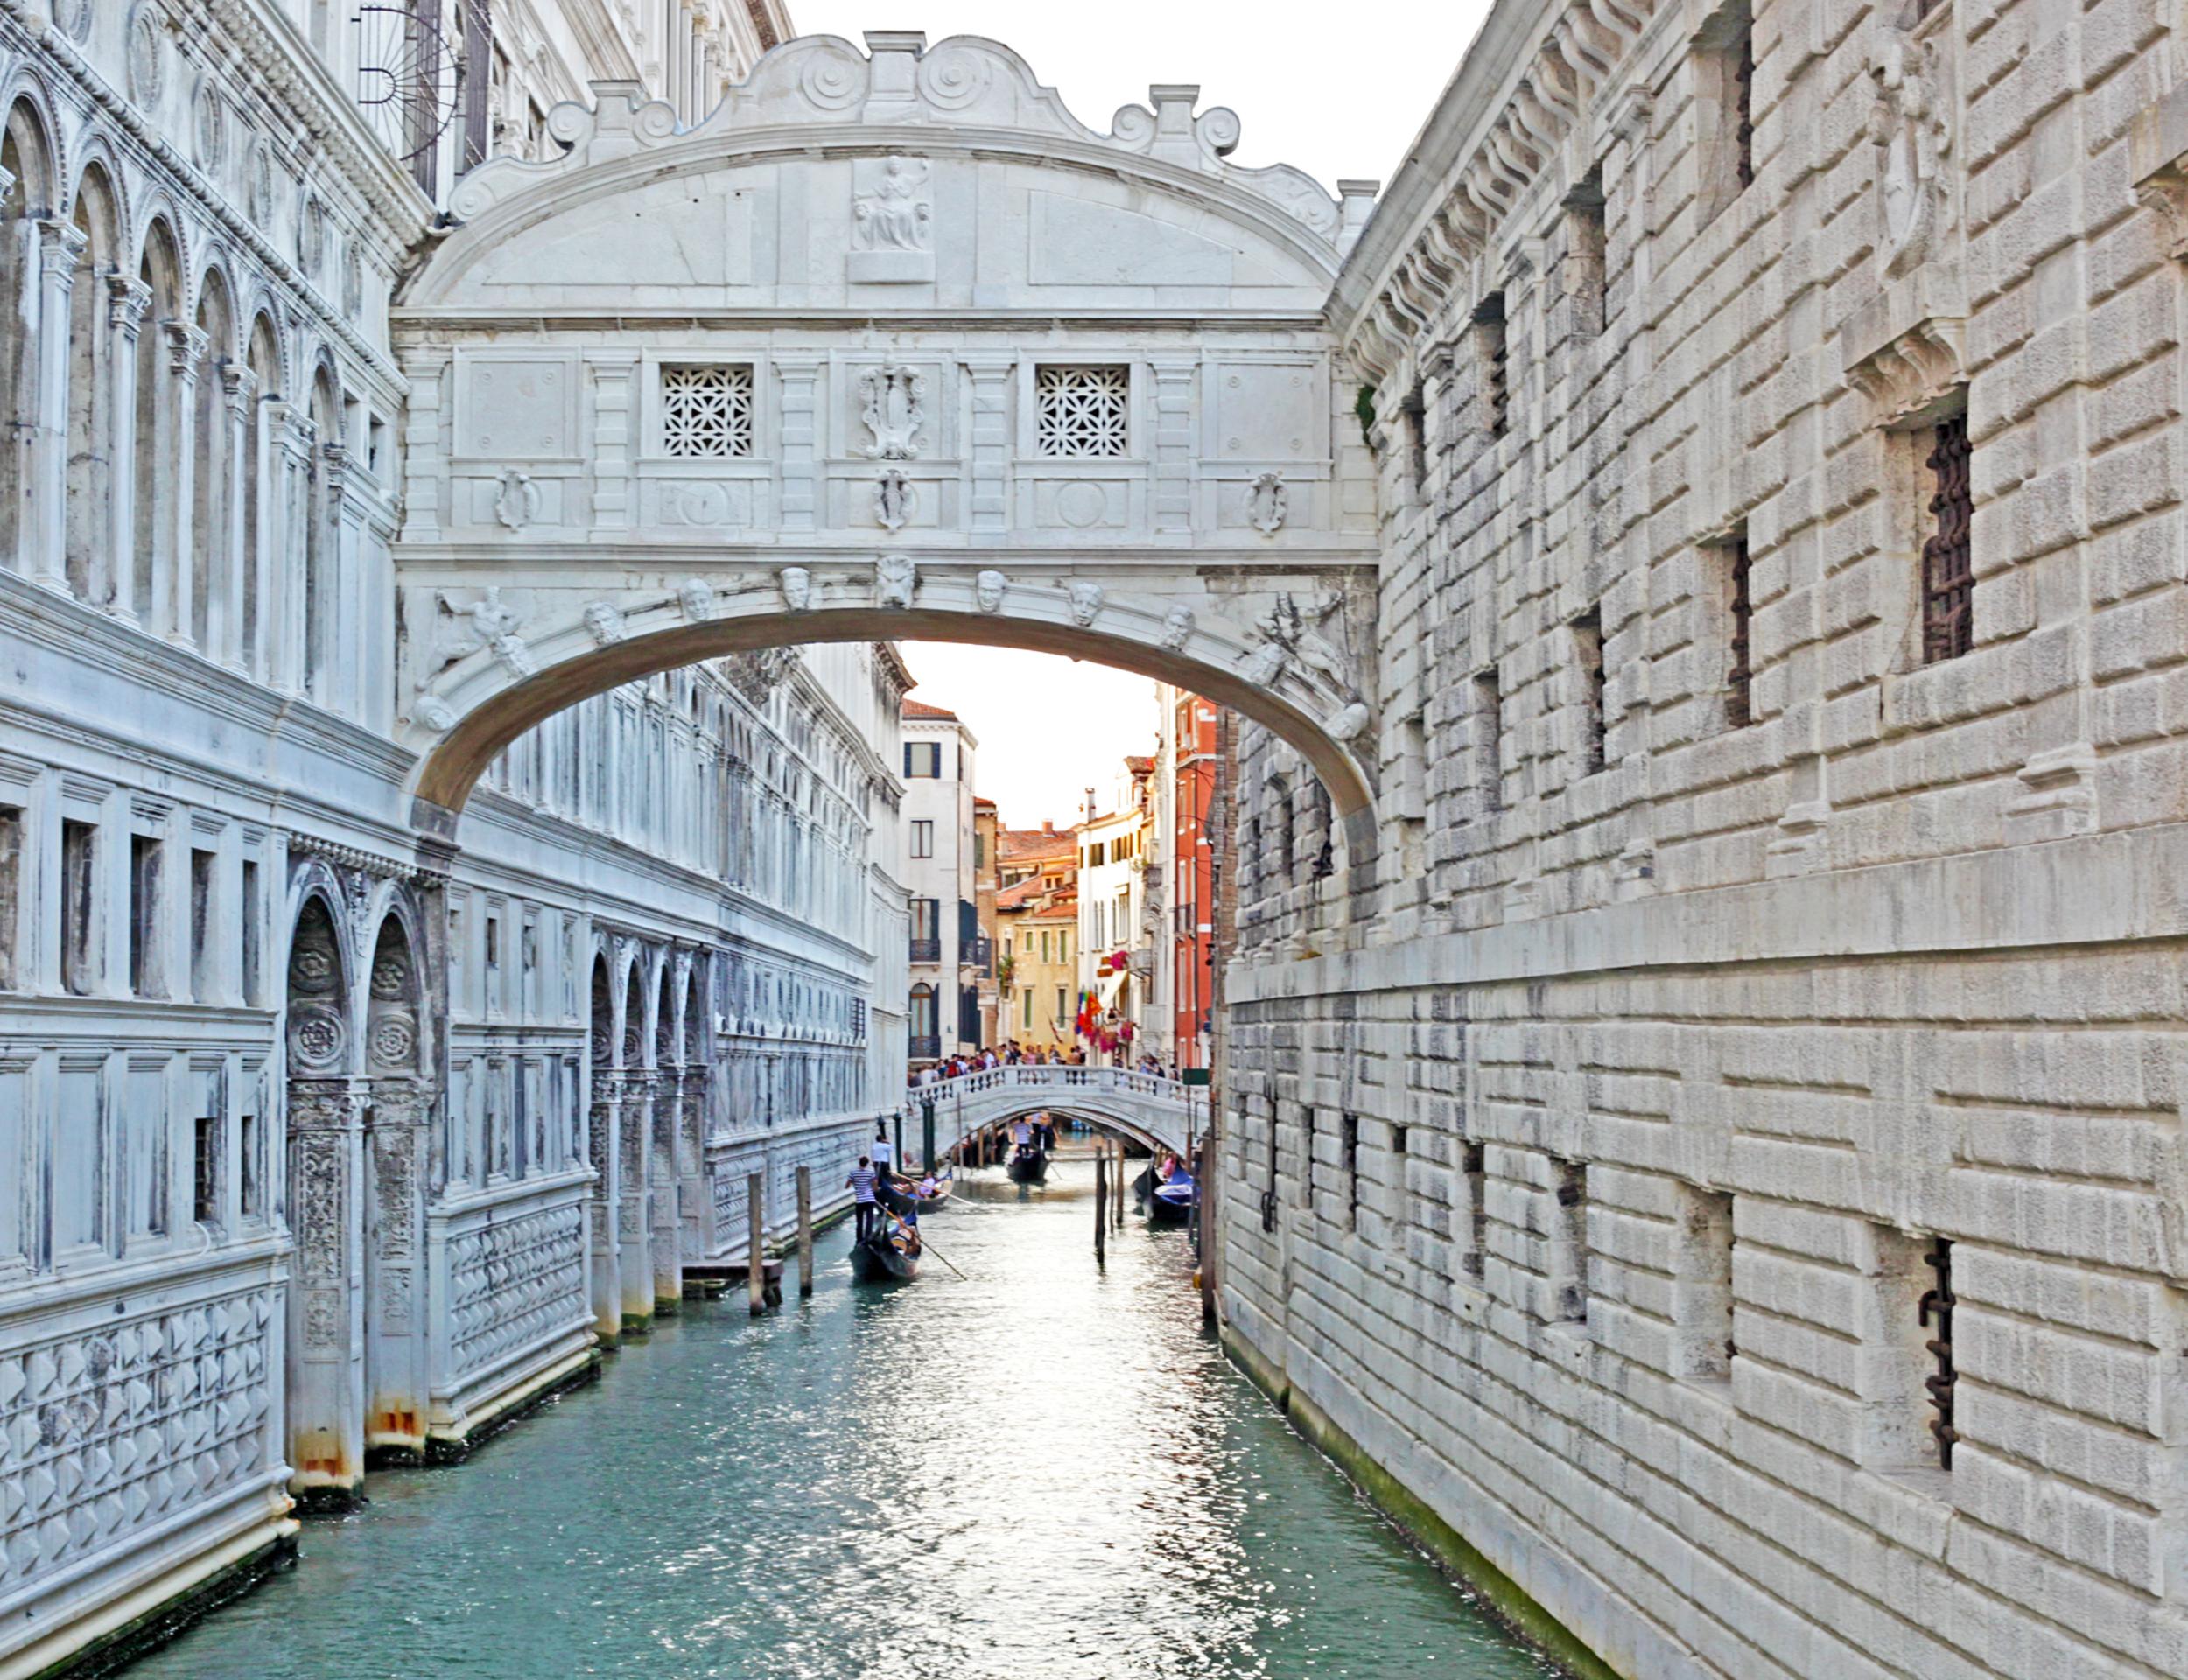 Visite guidée de Venise à pied, billet coupe-file pour la Basilique Saint Marc et balade en gondole